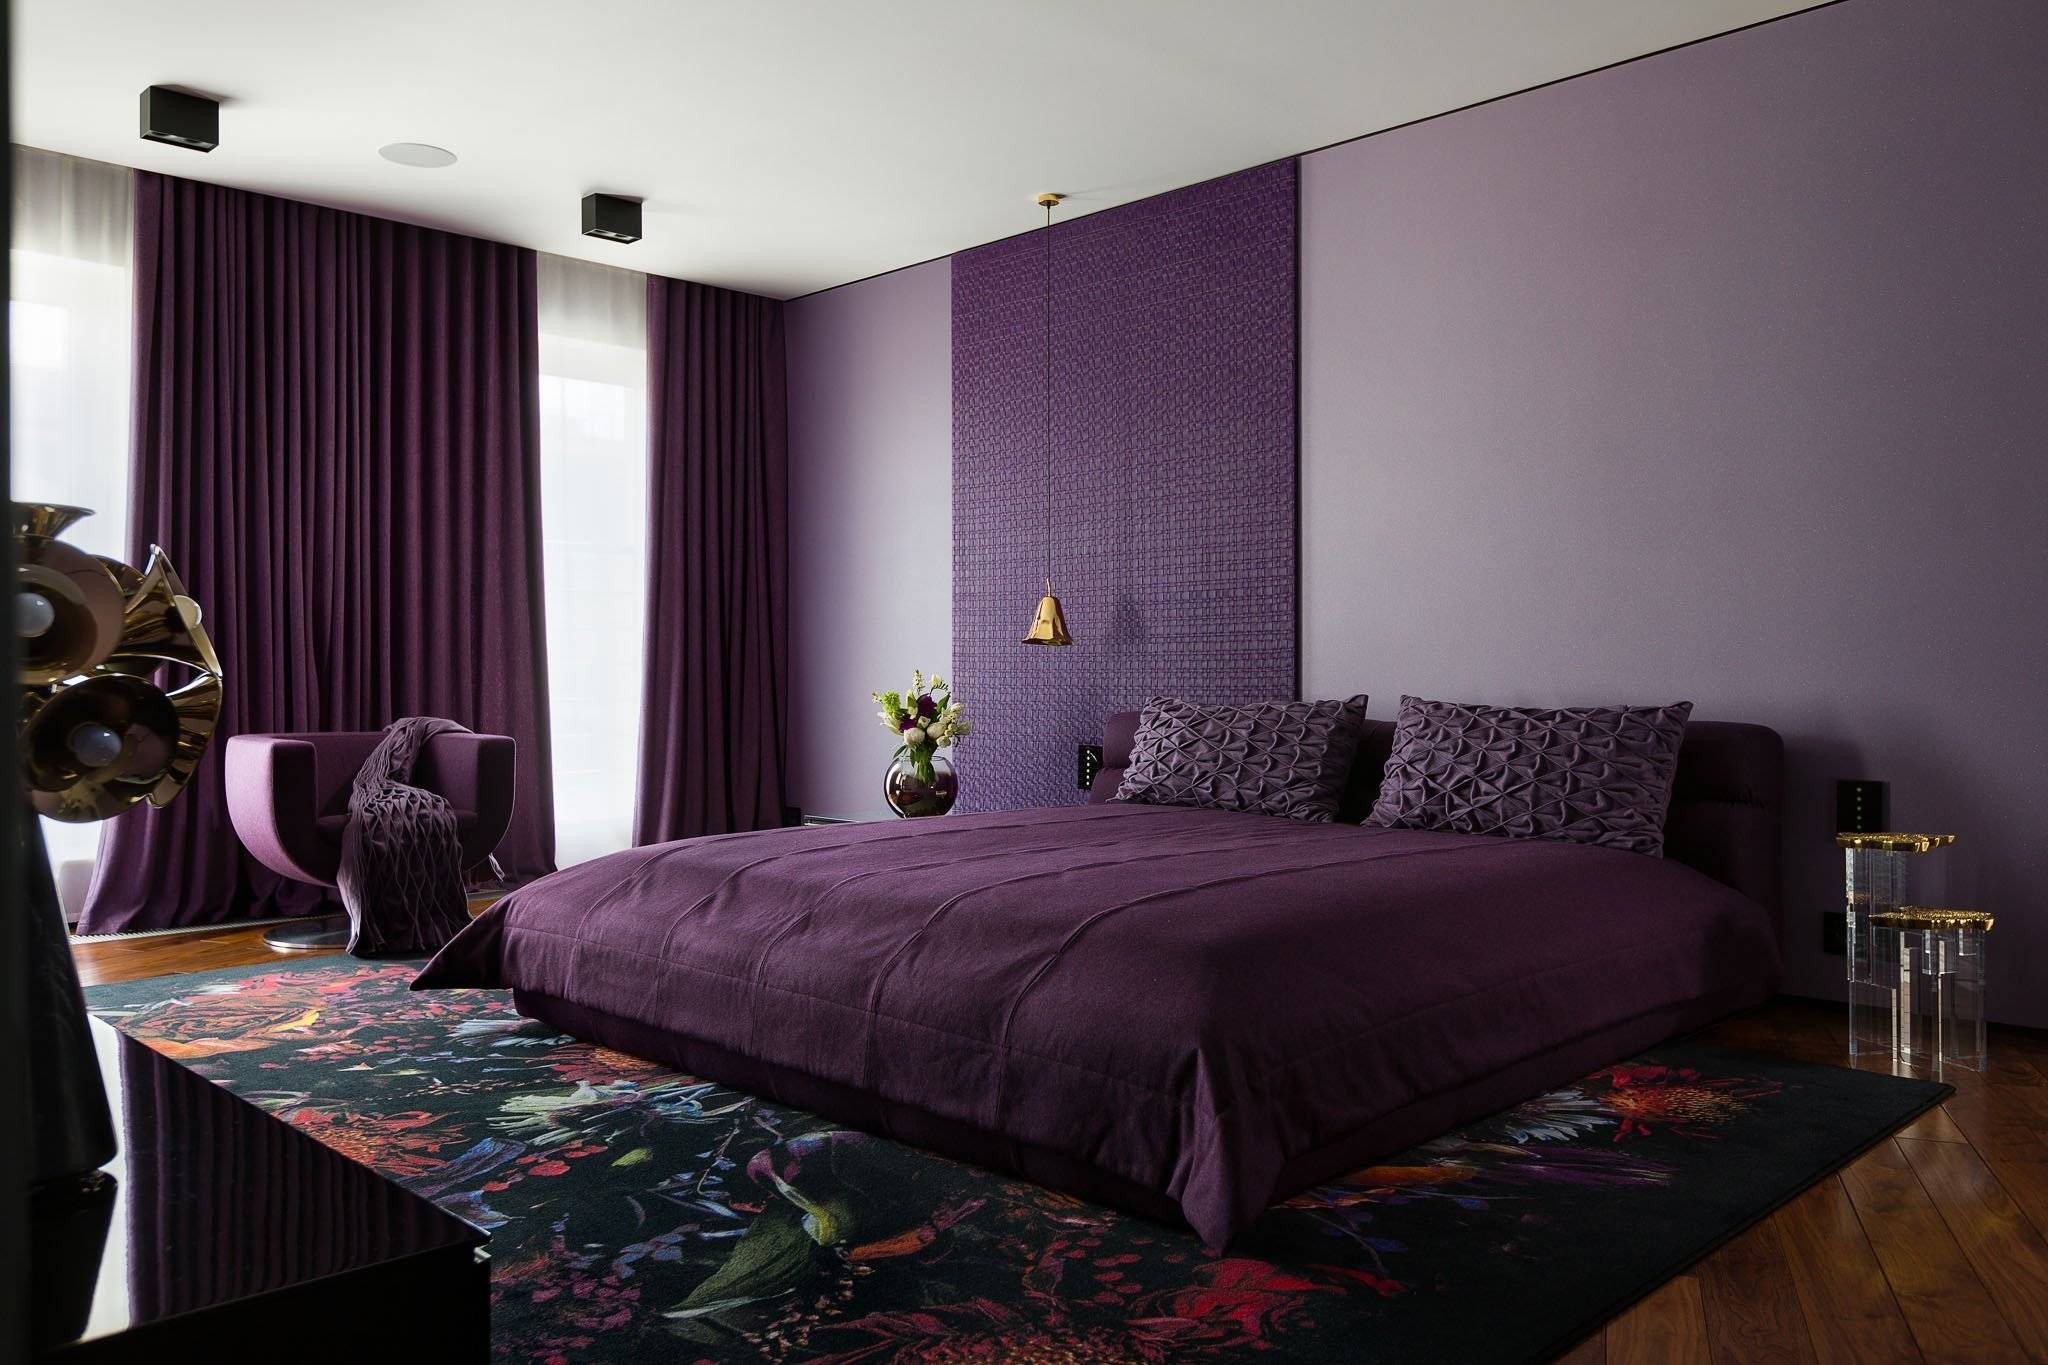 Мебель и пол к сиреневым обоям. сиреневые обои: для стен в интерьере, фото, цвета, с каким сочетаются, тона, бледно сиреневые с цветами, какой цвет дивана подойдет, видео. фиолетовый цвет в ванной